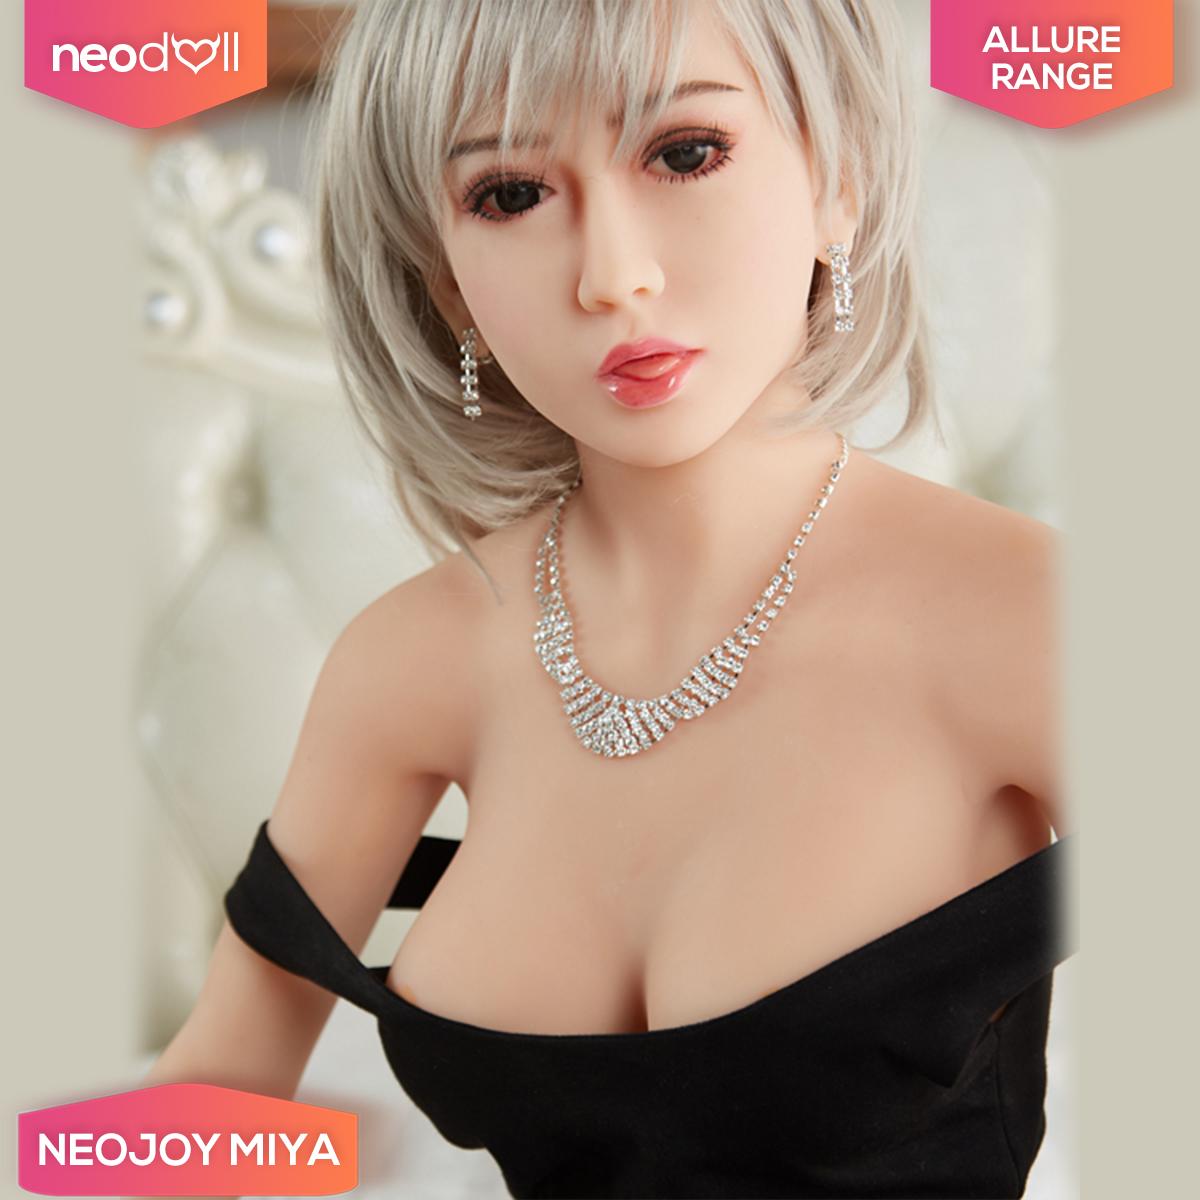 Neodoll Allure Miya - Realistic Sex Doll -169cm